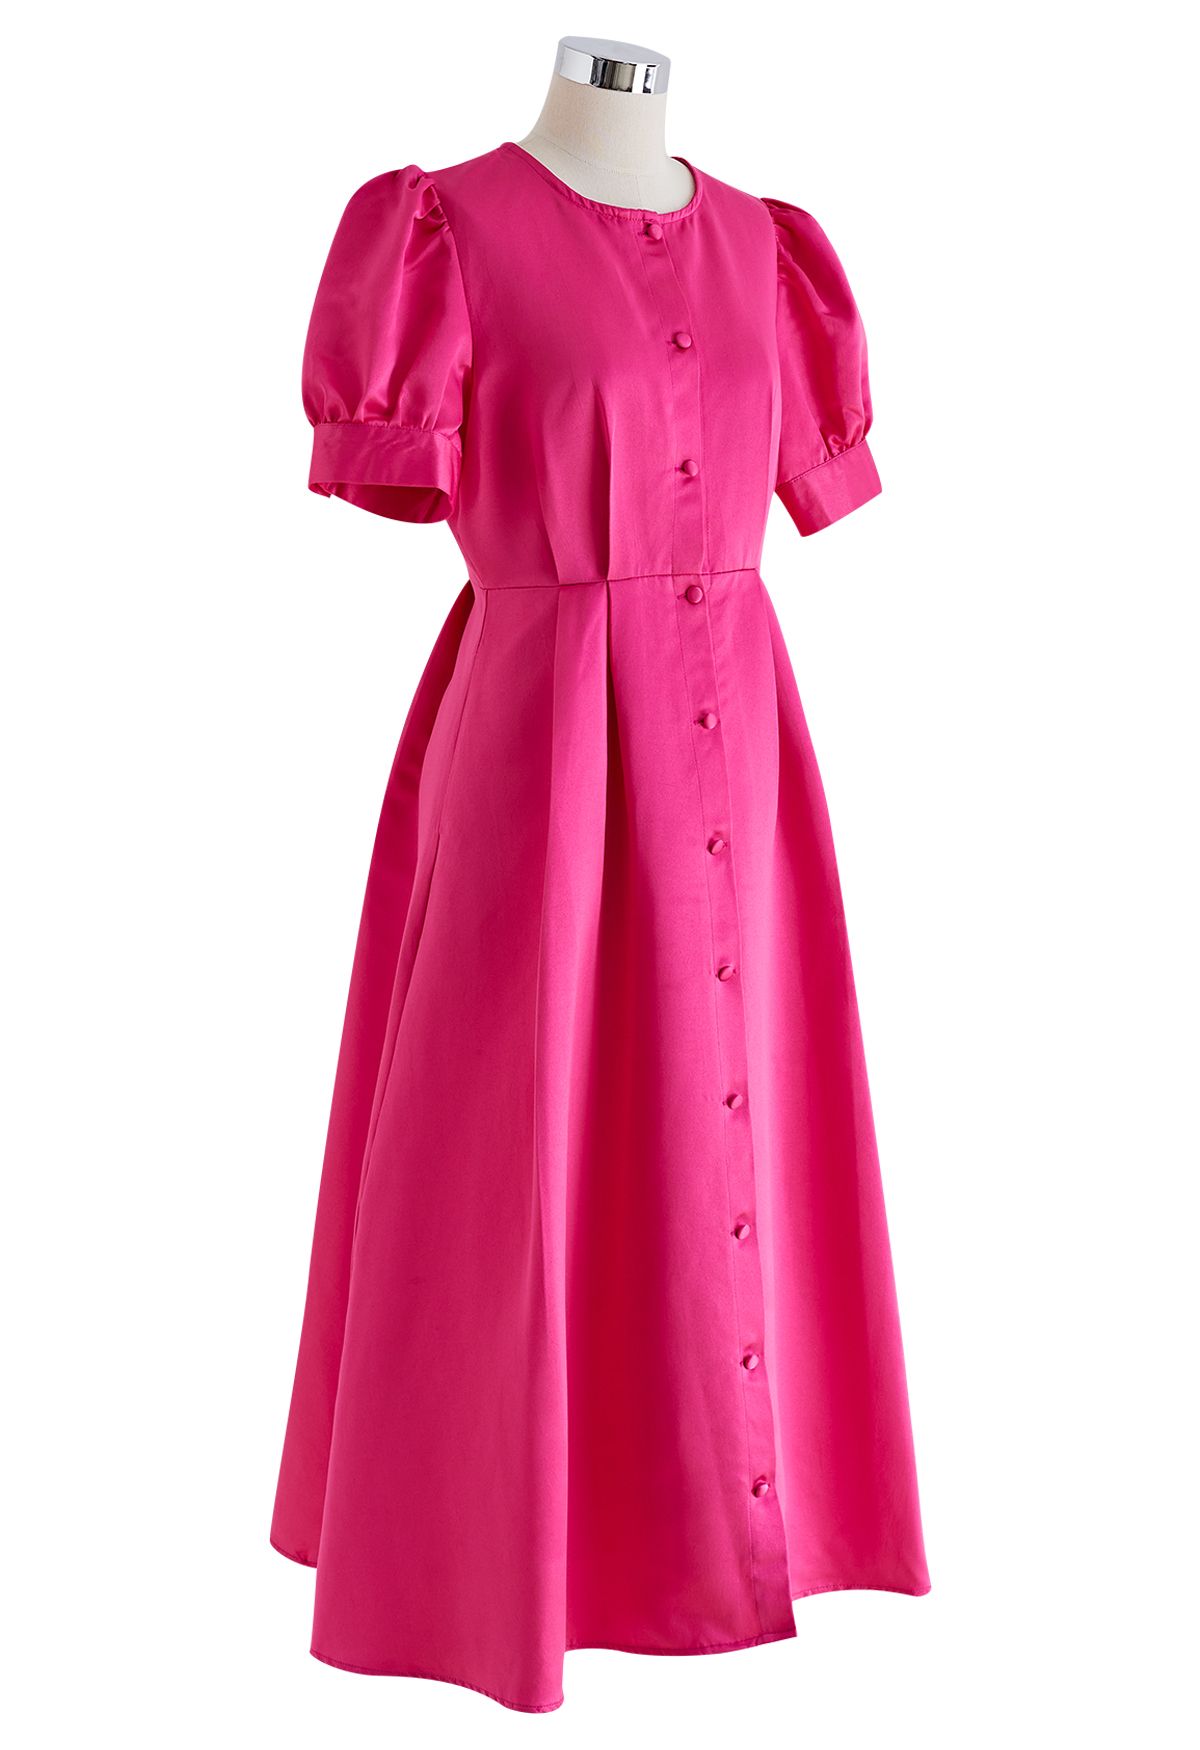 Robe mi-longue boutonnée en satin brillant rose vif